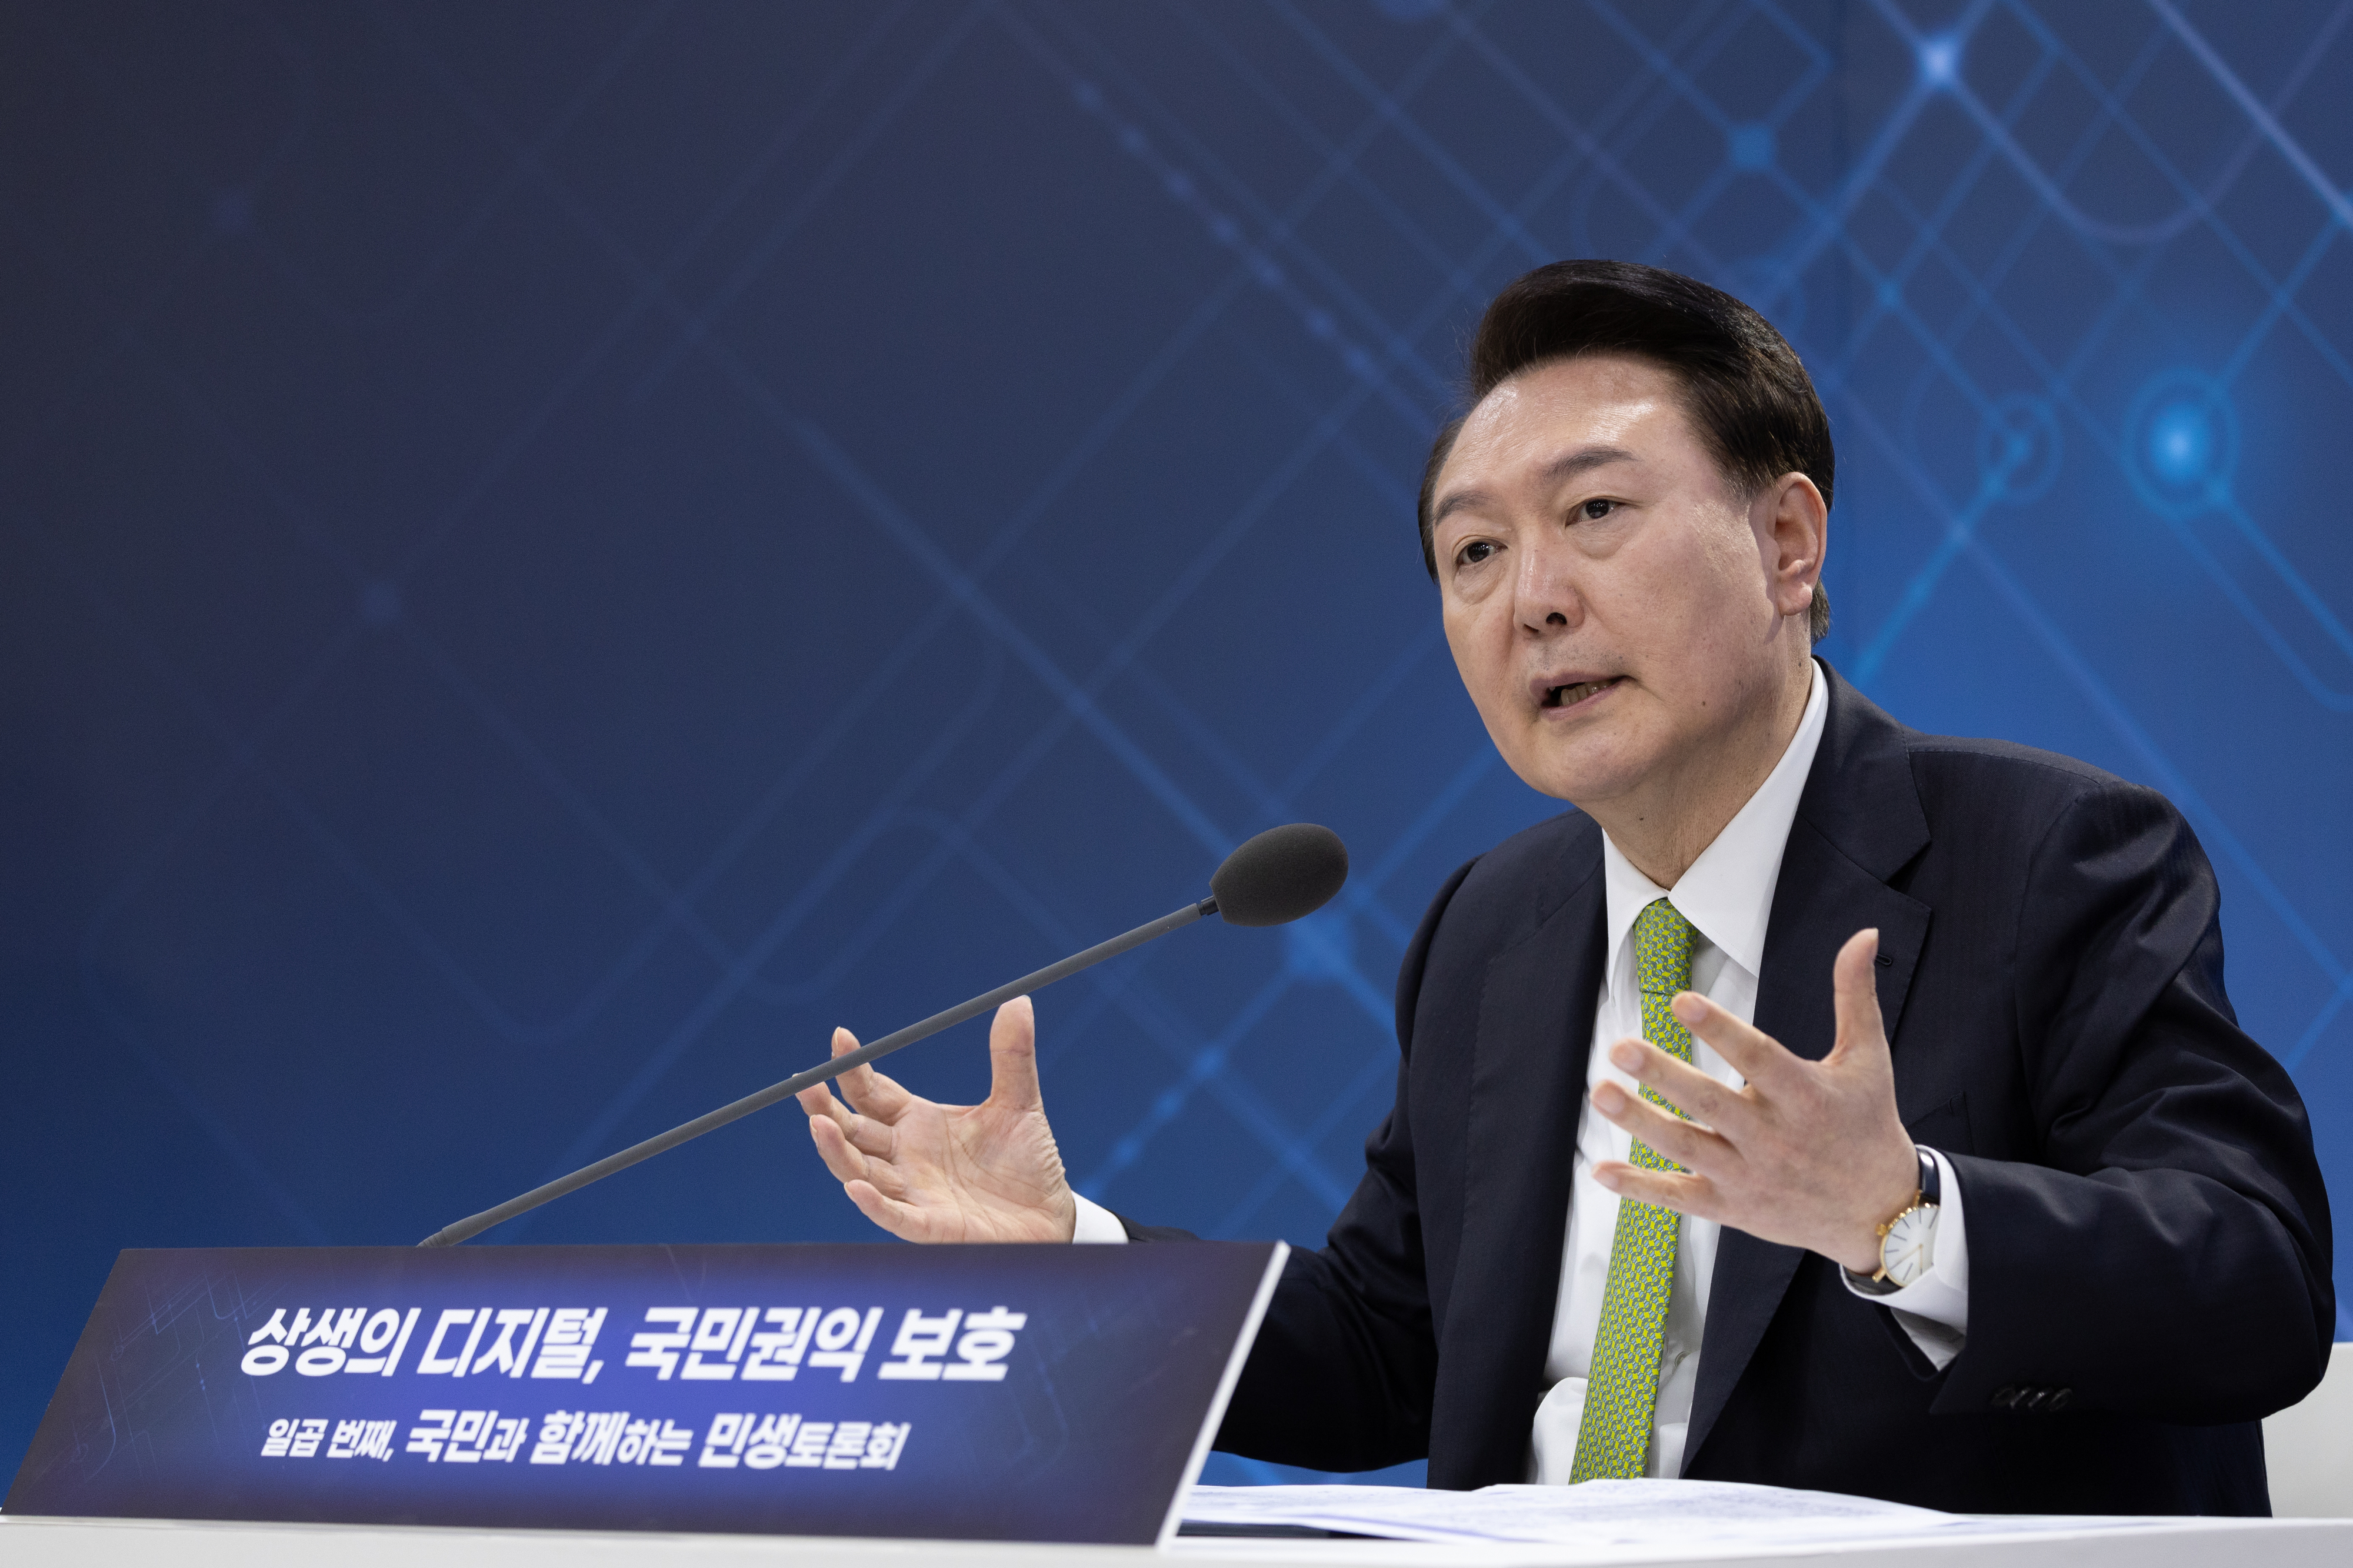 ‘상생 디지털 국민권익 보호’ 민생토론 발언하는 윤석열 대통령